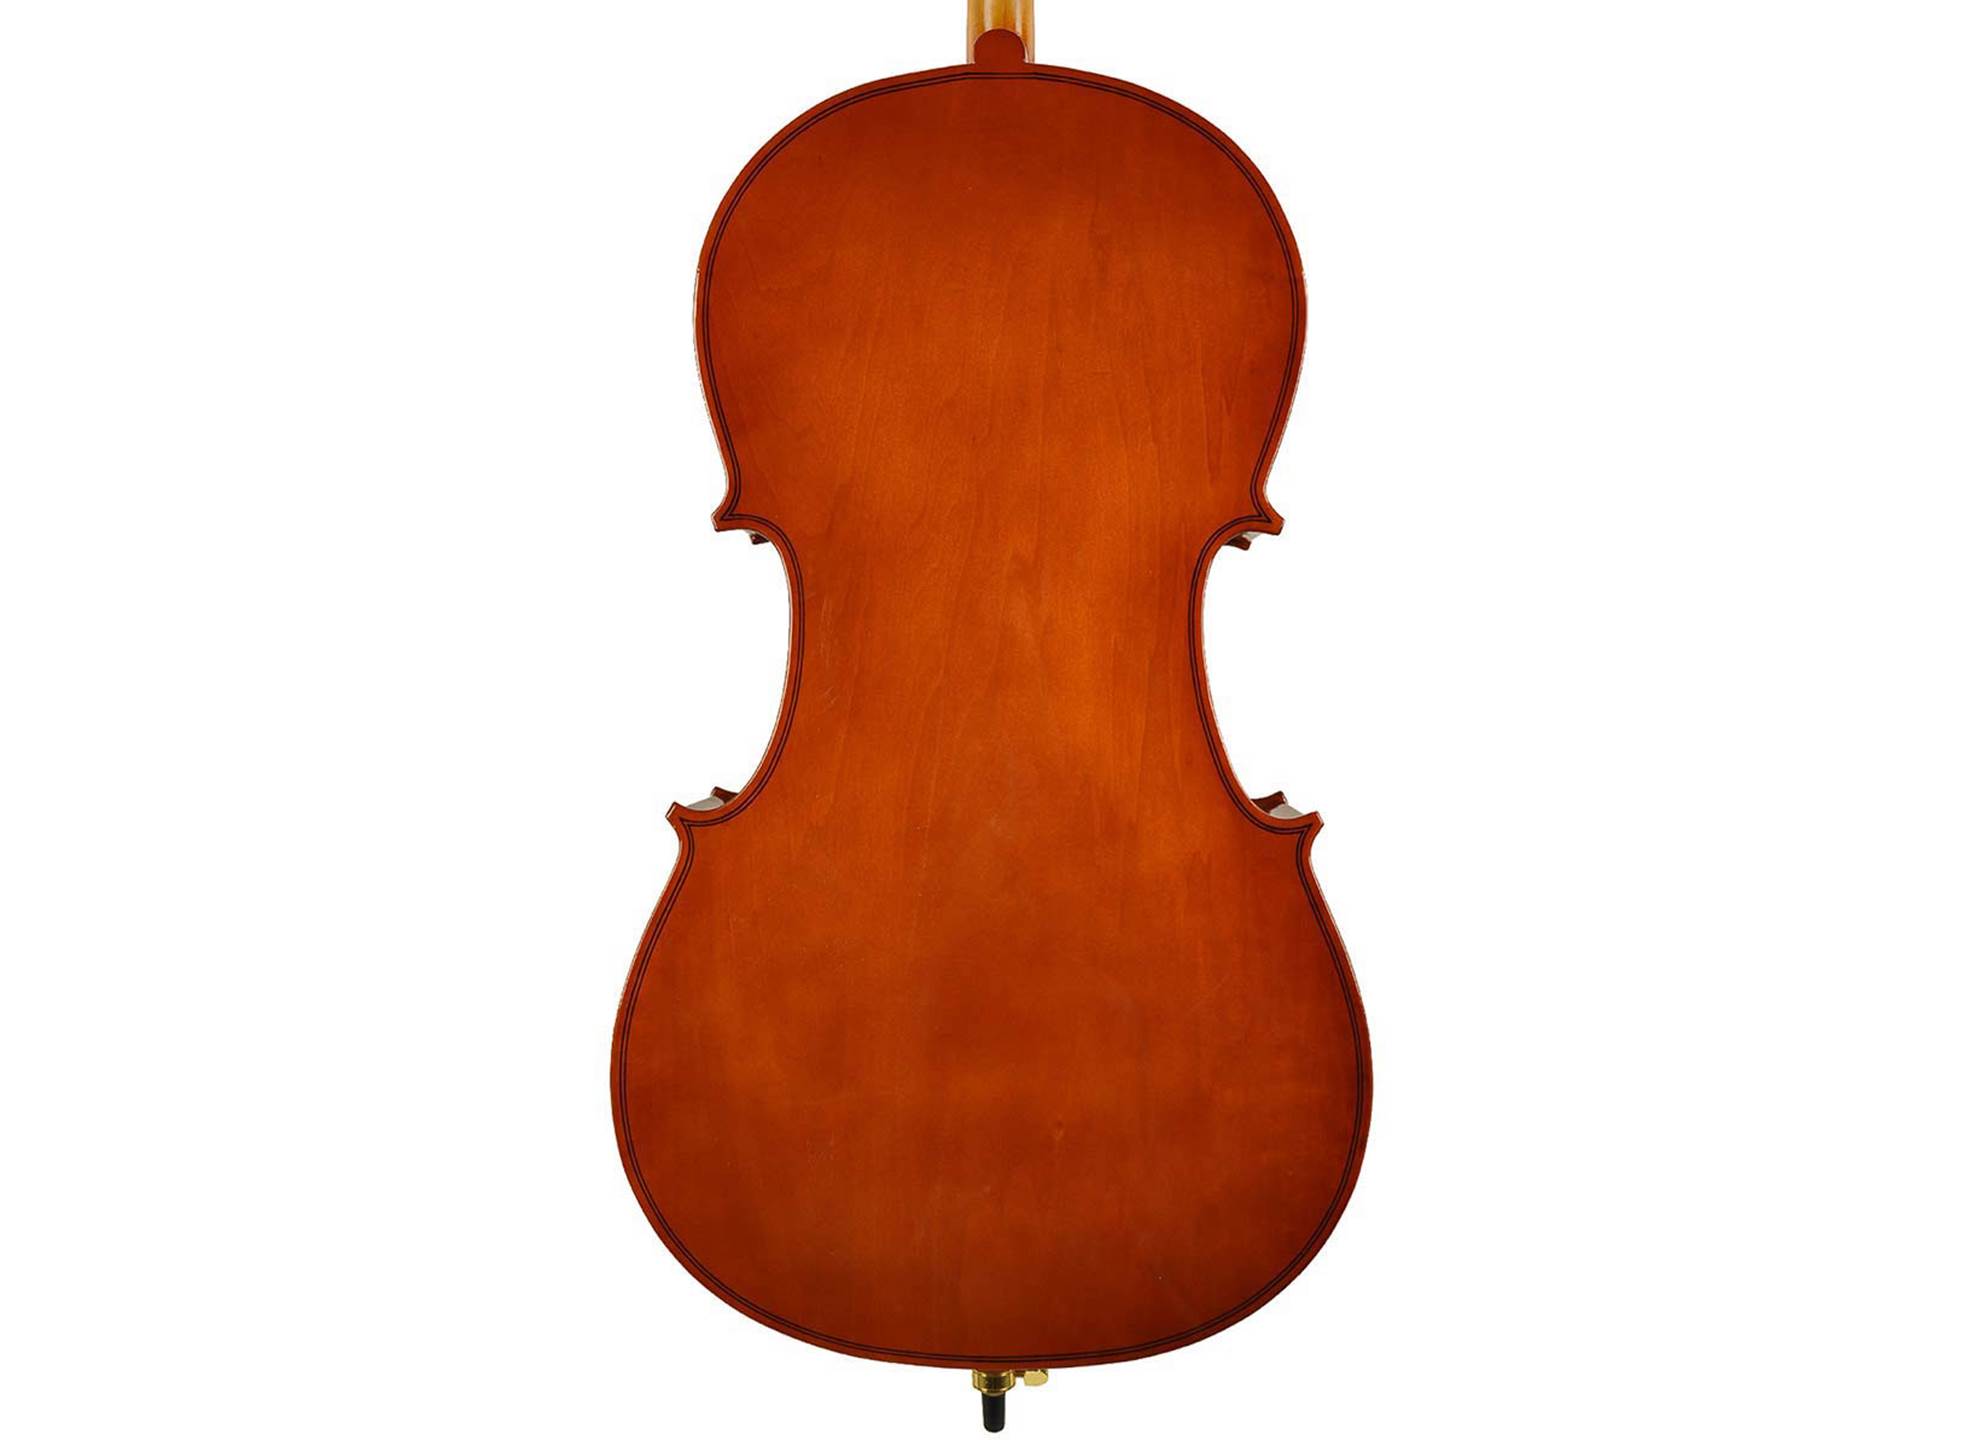 LC-1044 Cello Set 4/4